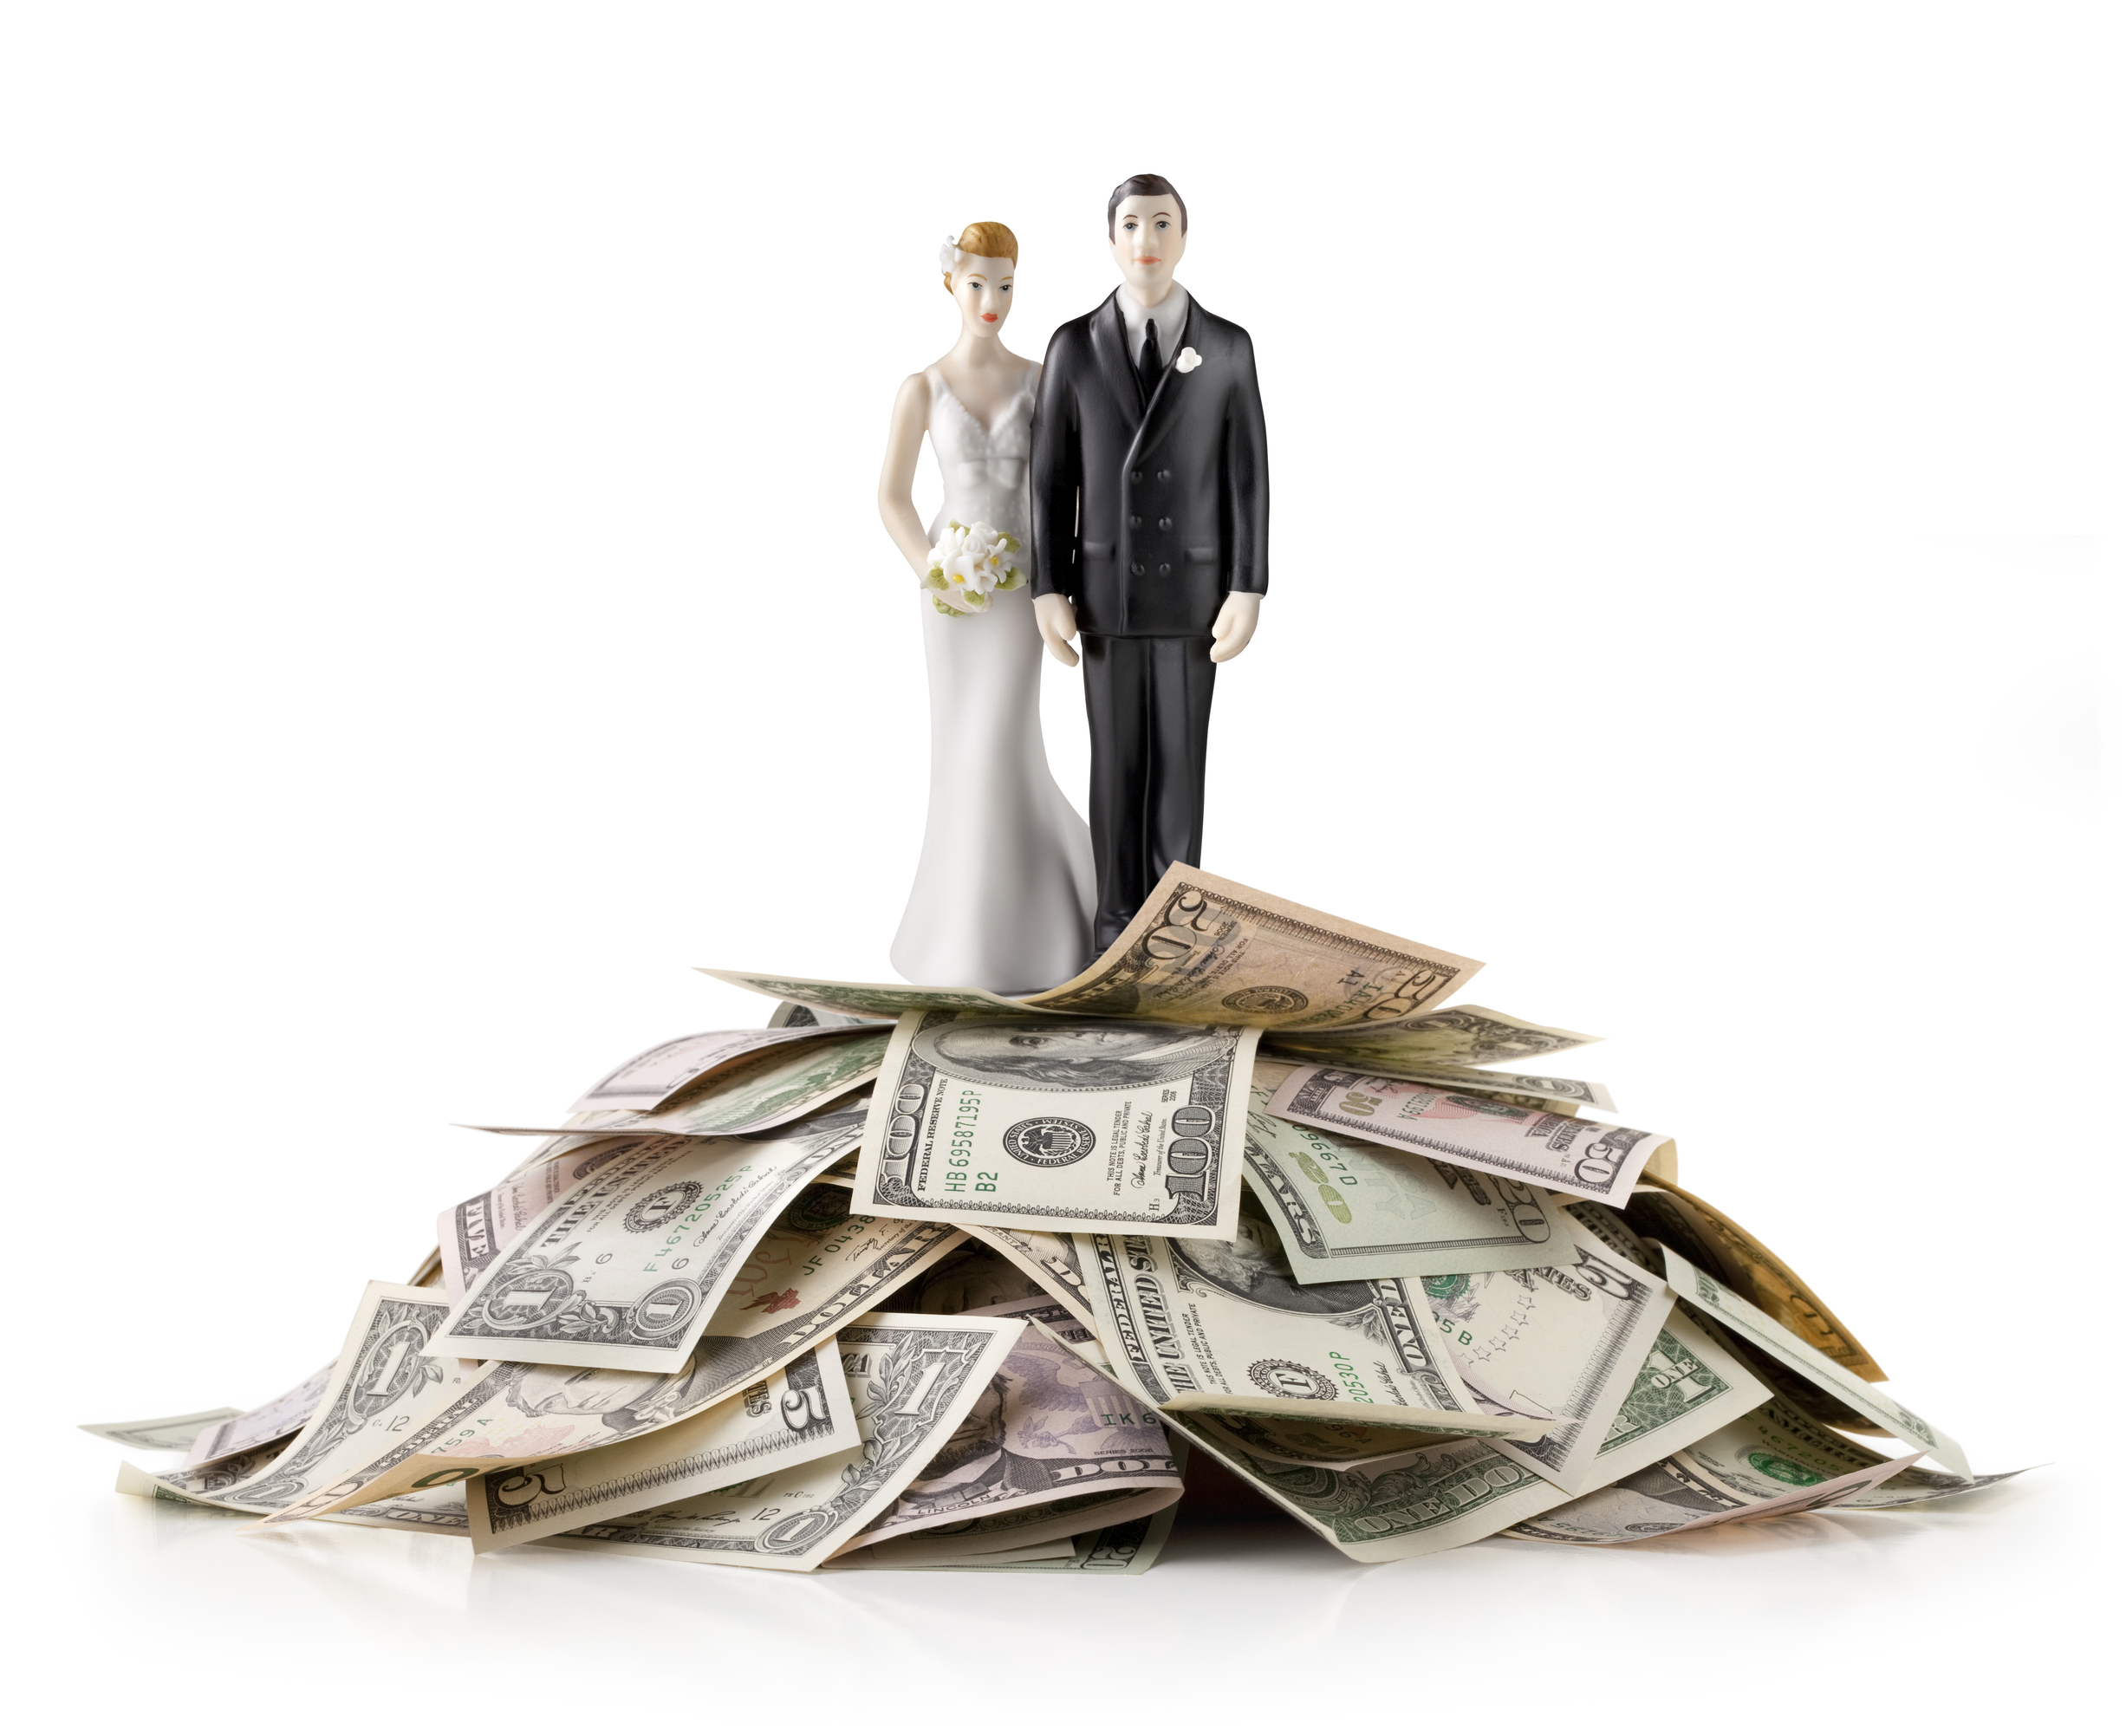 بایدها و نبایدهای درآمد زوجه در زندگی مشترک